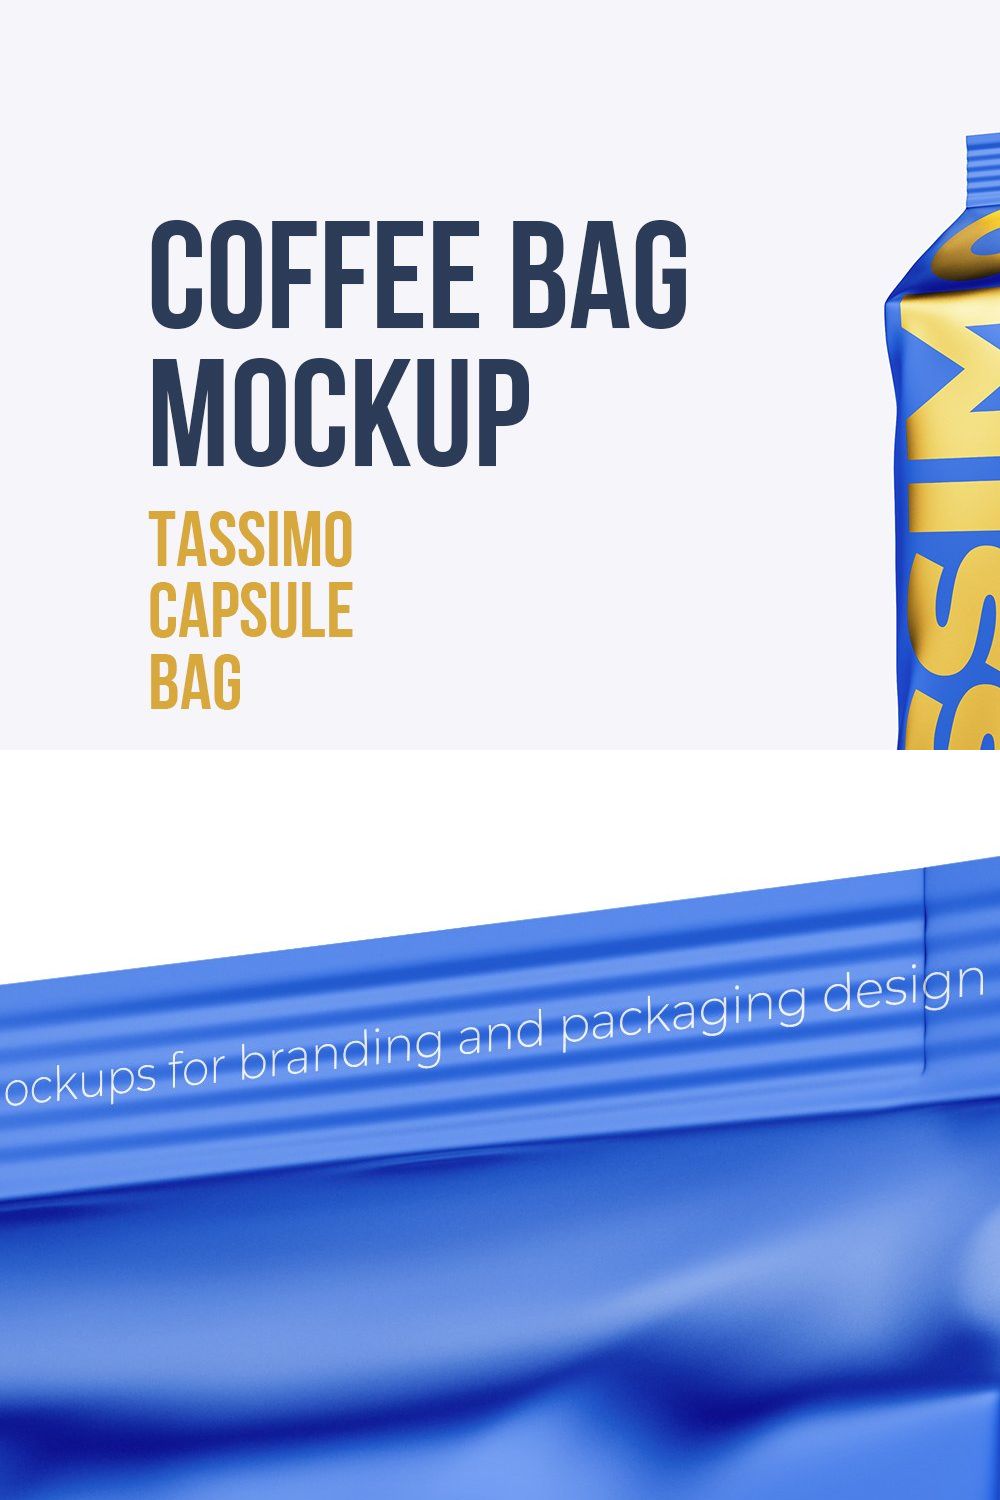 Coffee Bag mockup. Tassimo pinterest preview image.